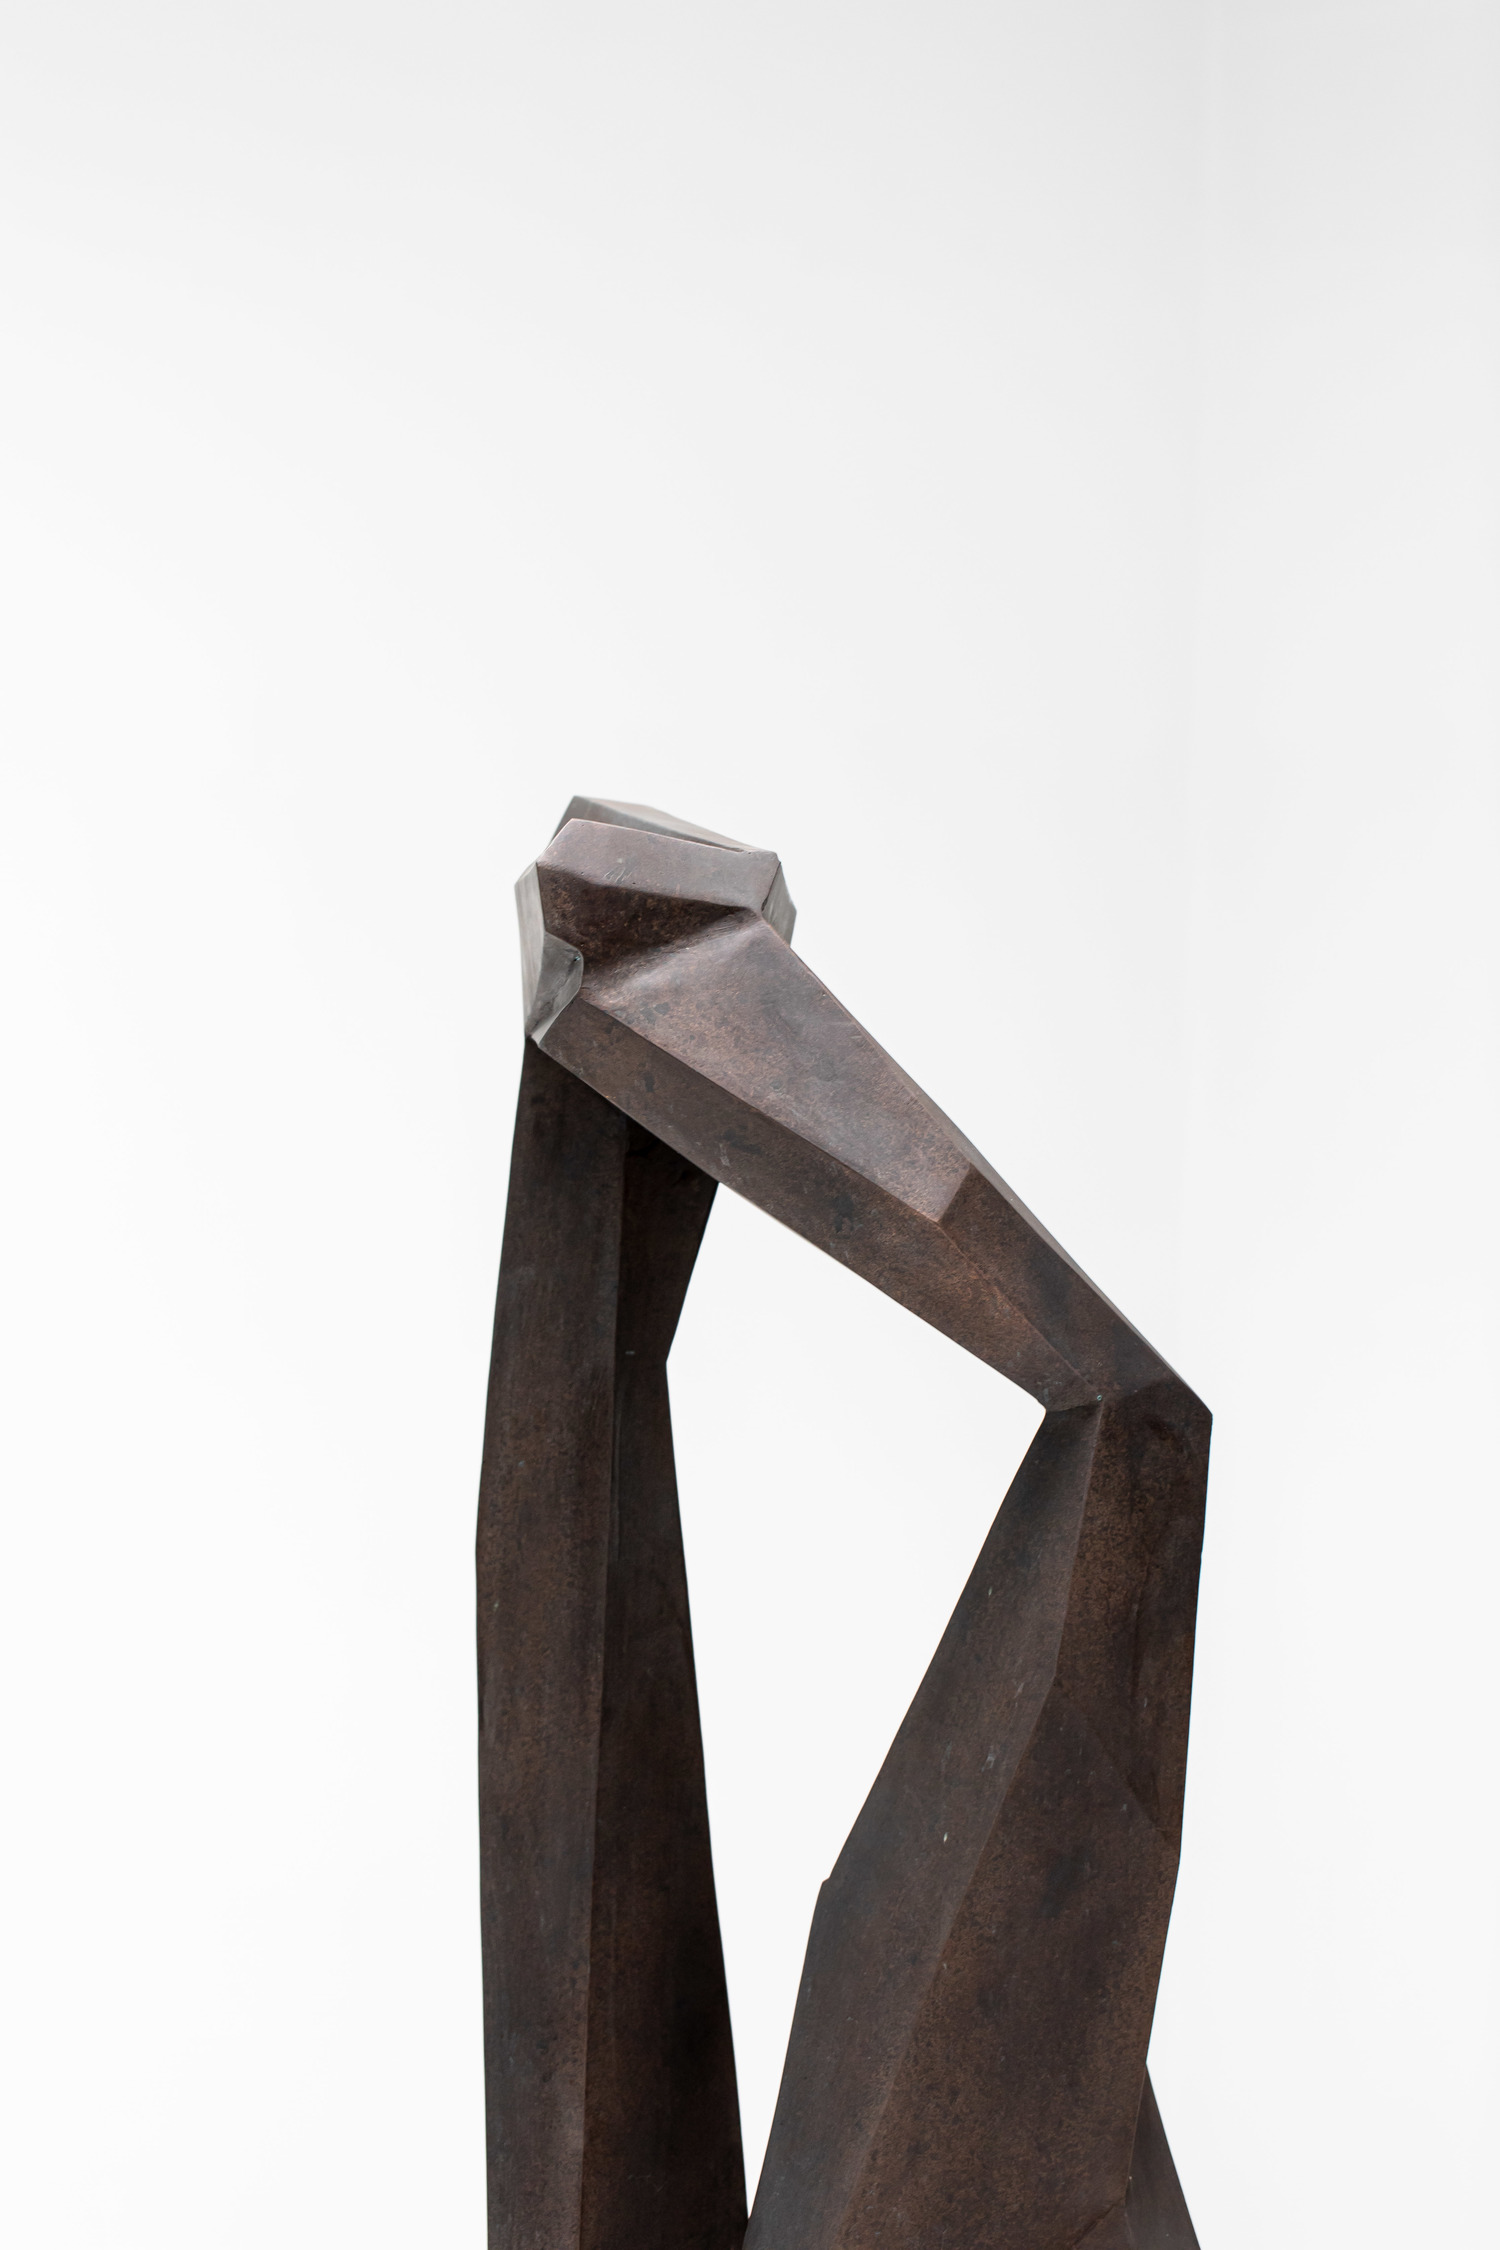 Steffen Christensen Sculpture